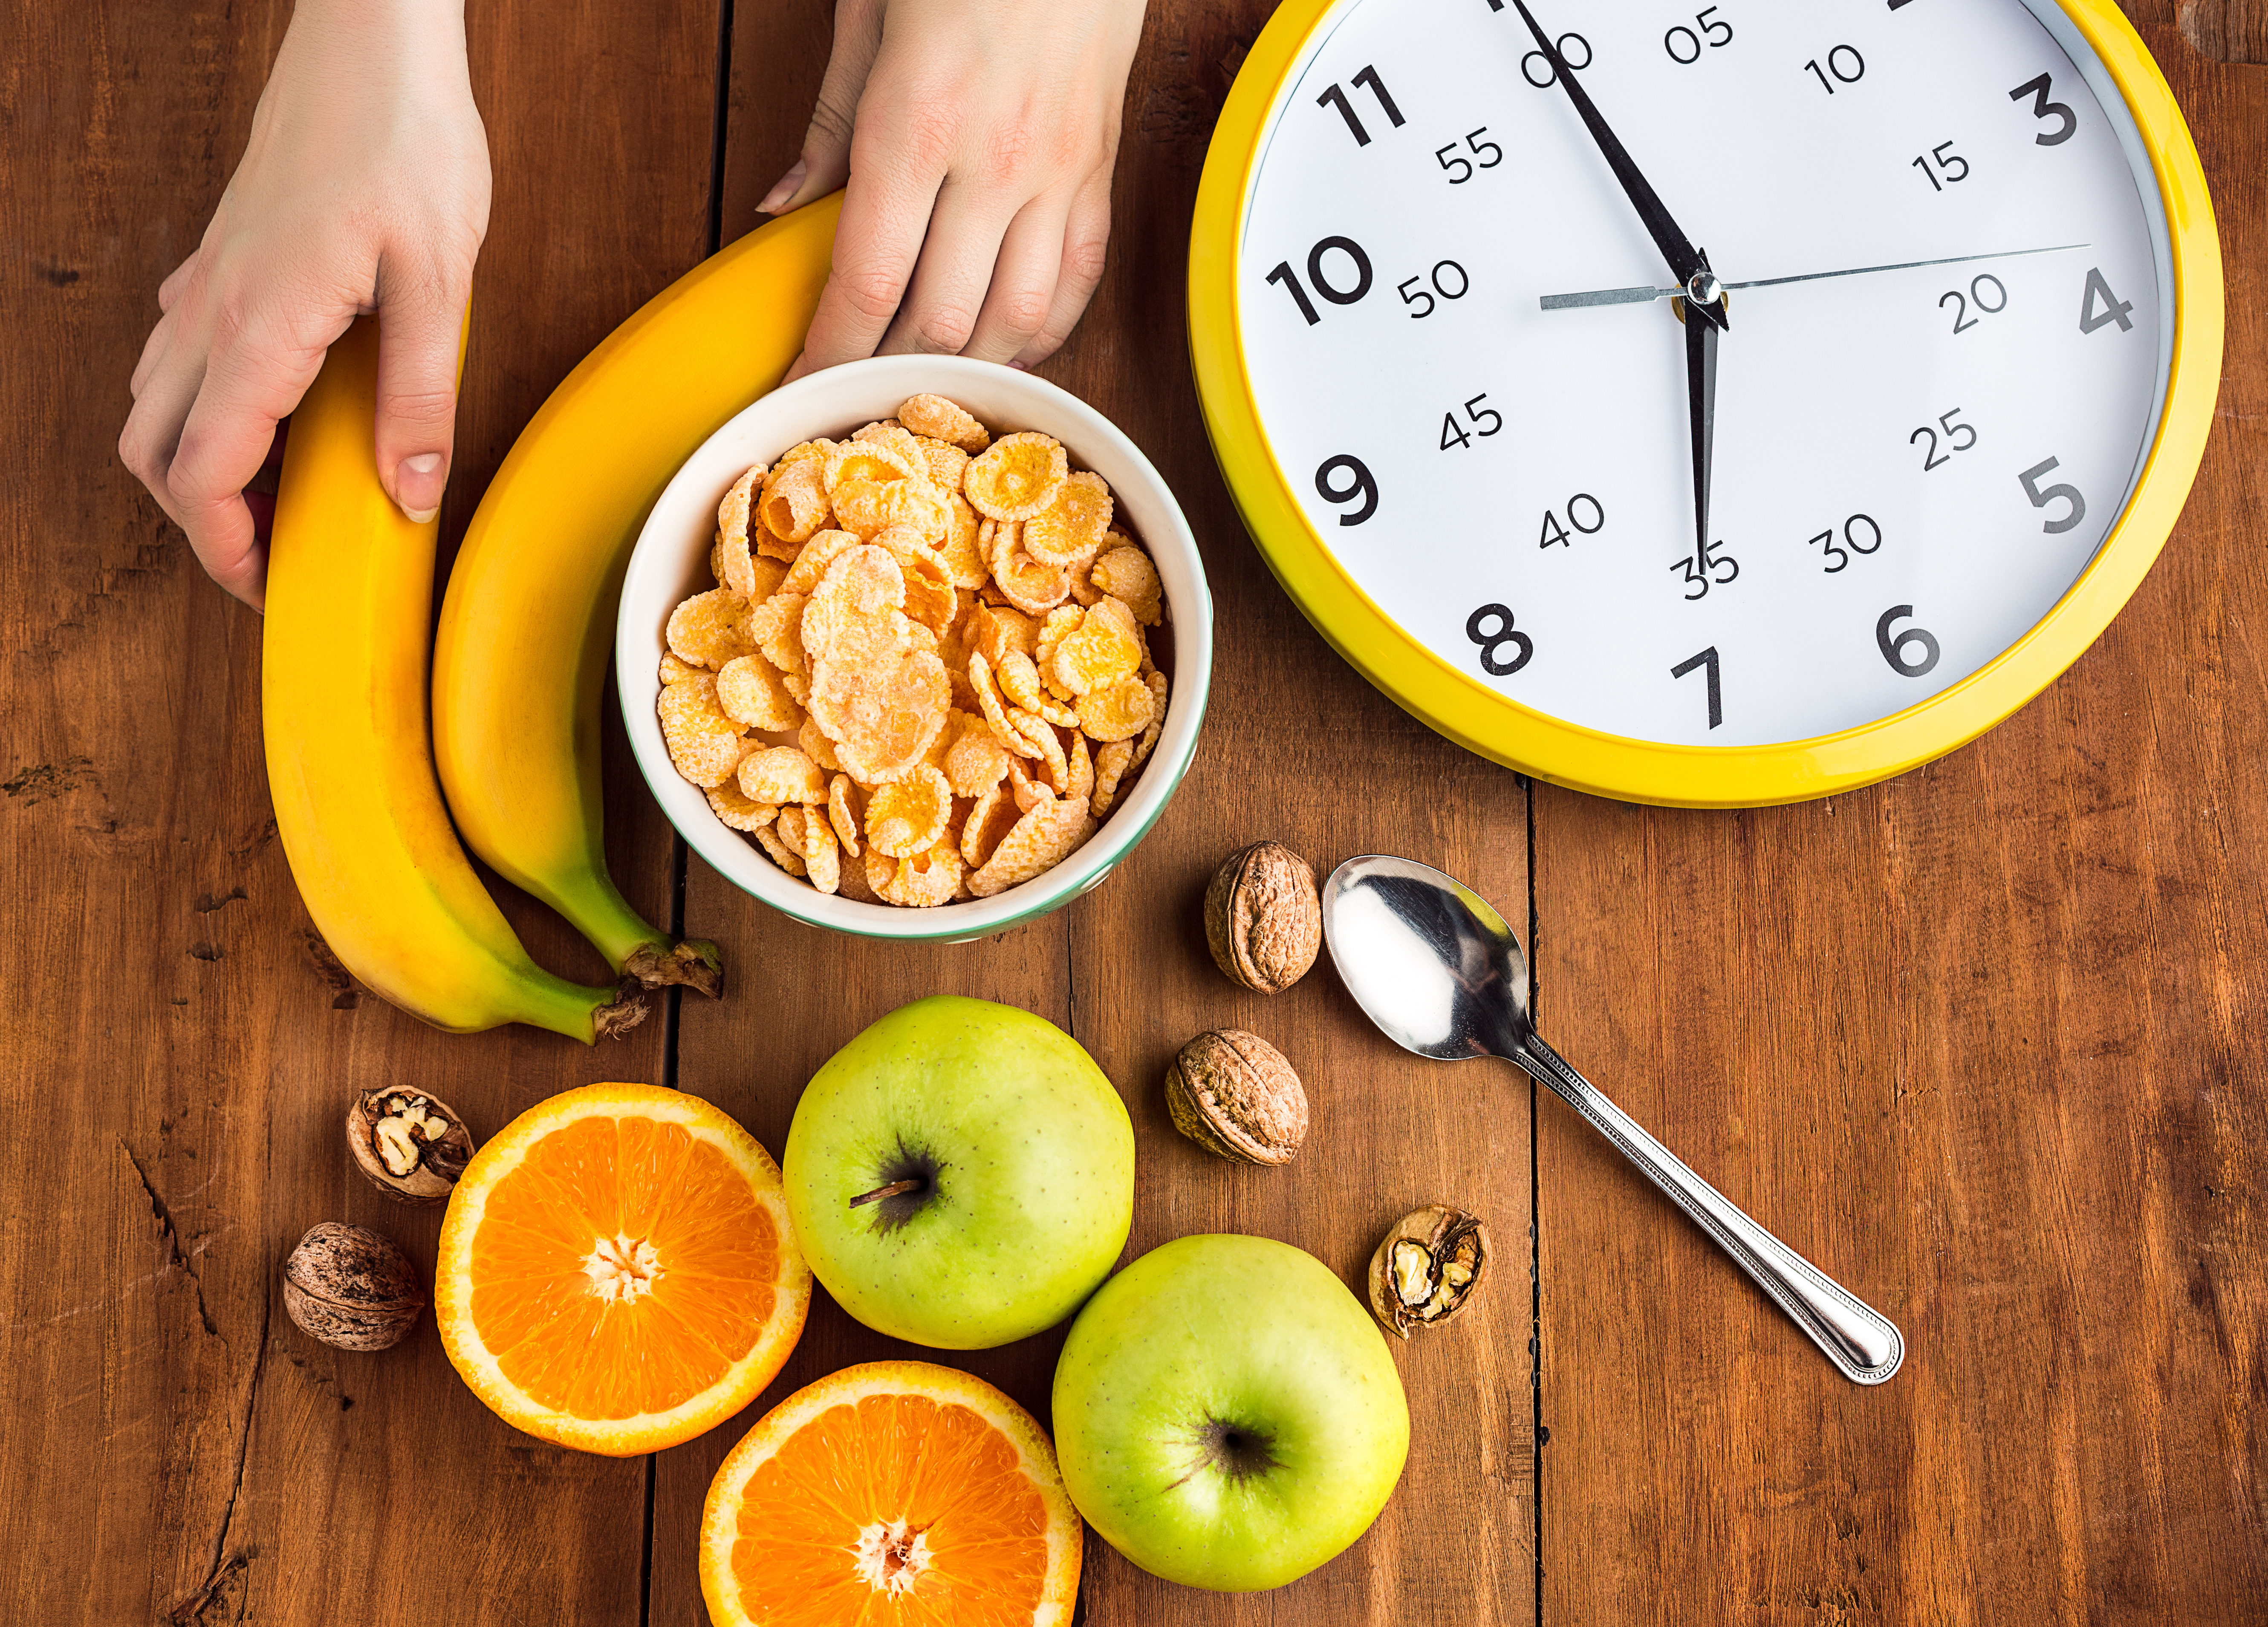 Pemula Diet Wajib Tahu, Ini Jam Makan untuk Diet Agar Berat Badan Turun Ideal